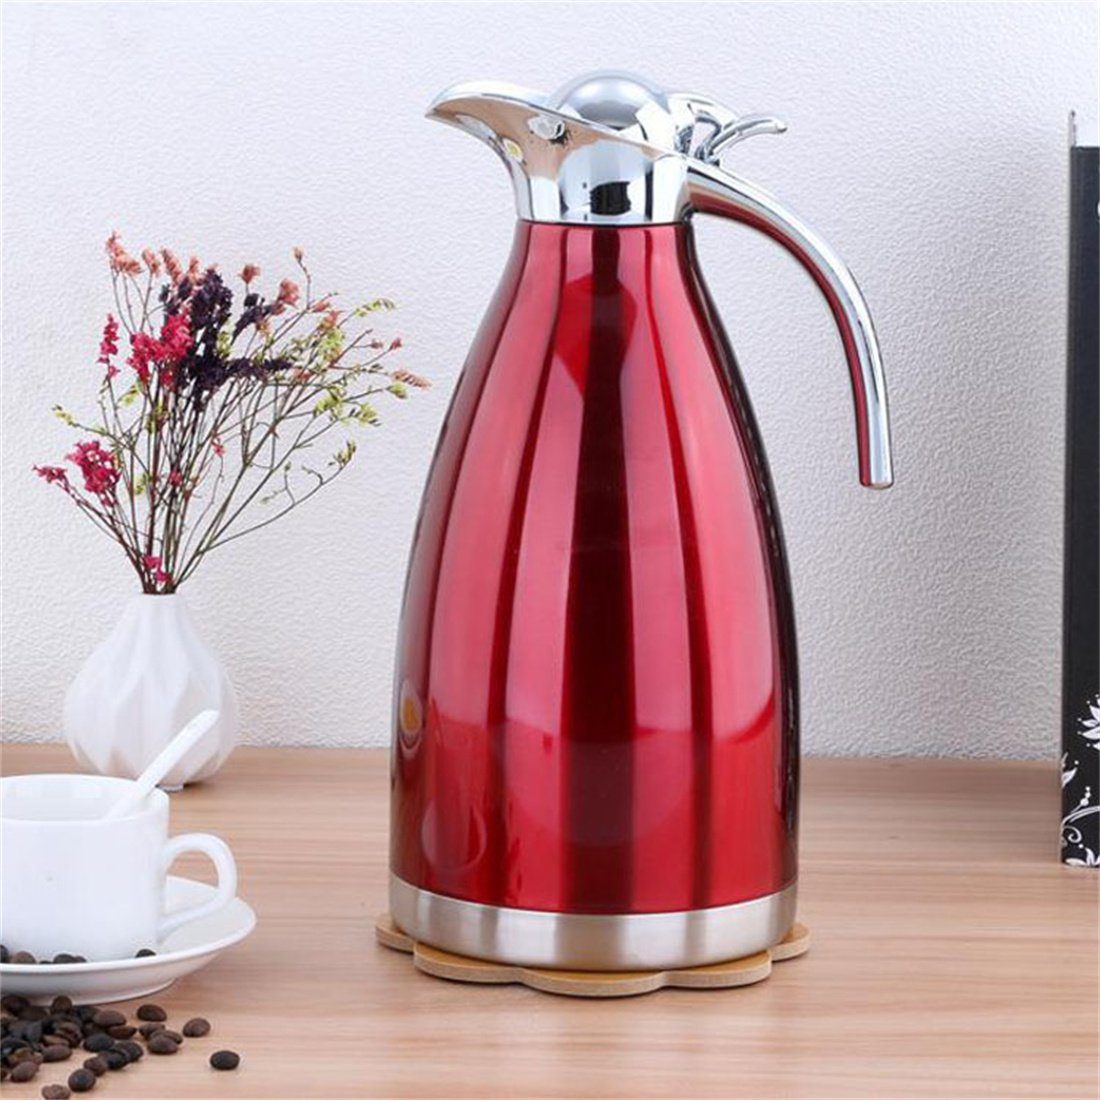 Heißwasserkocher, 2.0L DÖRÖY Rot Edelstahl-Wasserkocher, Isolierter Kaffeekanne Isolierkanne